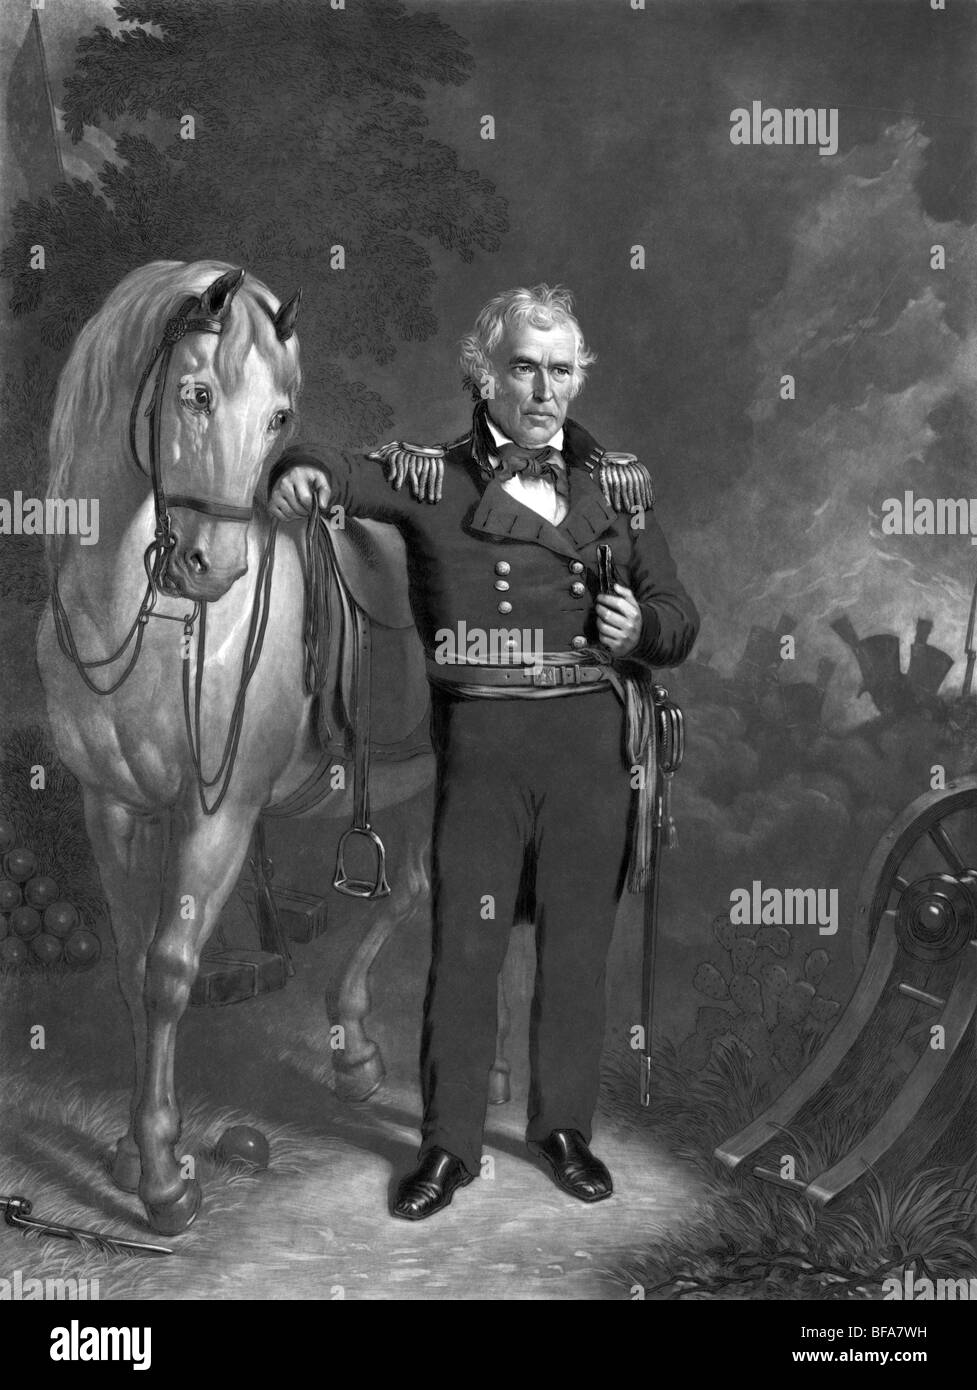 Porträt c1848 von Zachary Taylor in Militäruniform - Taylor (1784-1850) war der 12. US-Präsident (1849-1850). Stockfoto